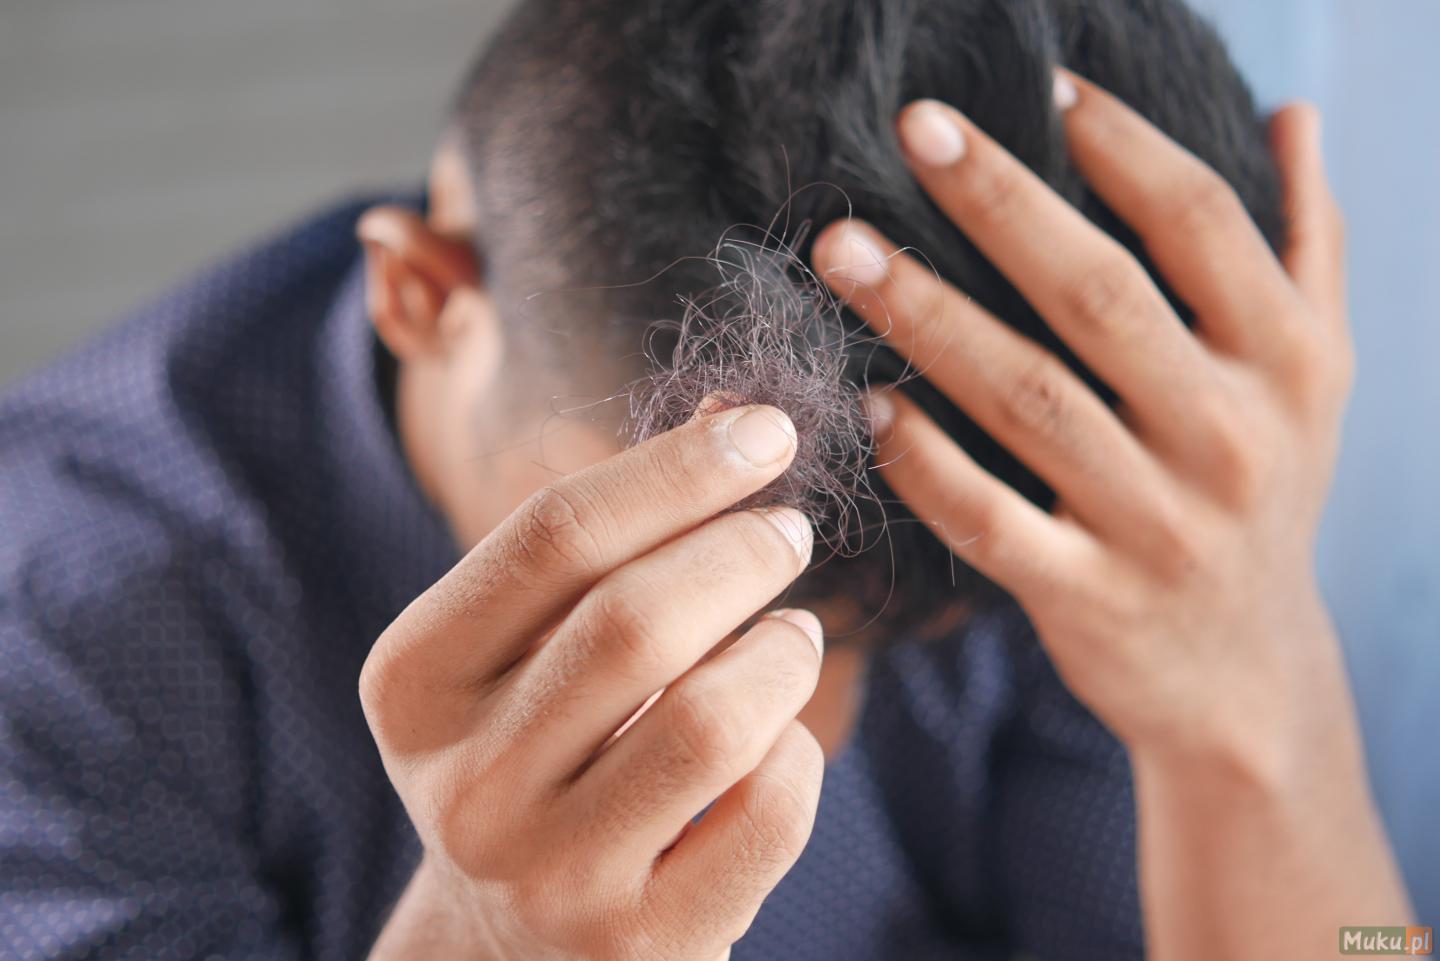 Łysienie u mężczyzn - Saifi Hair Transplant